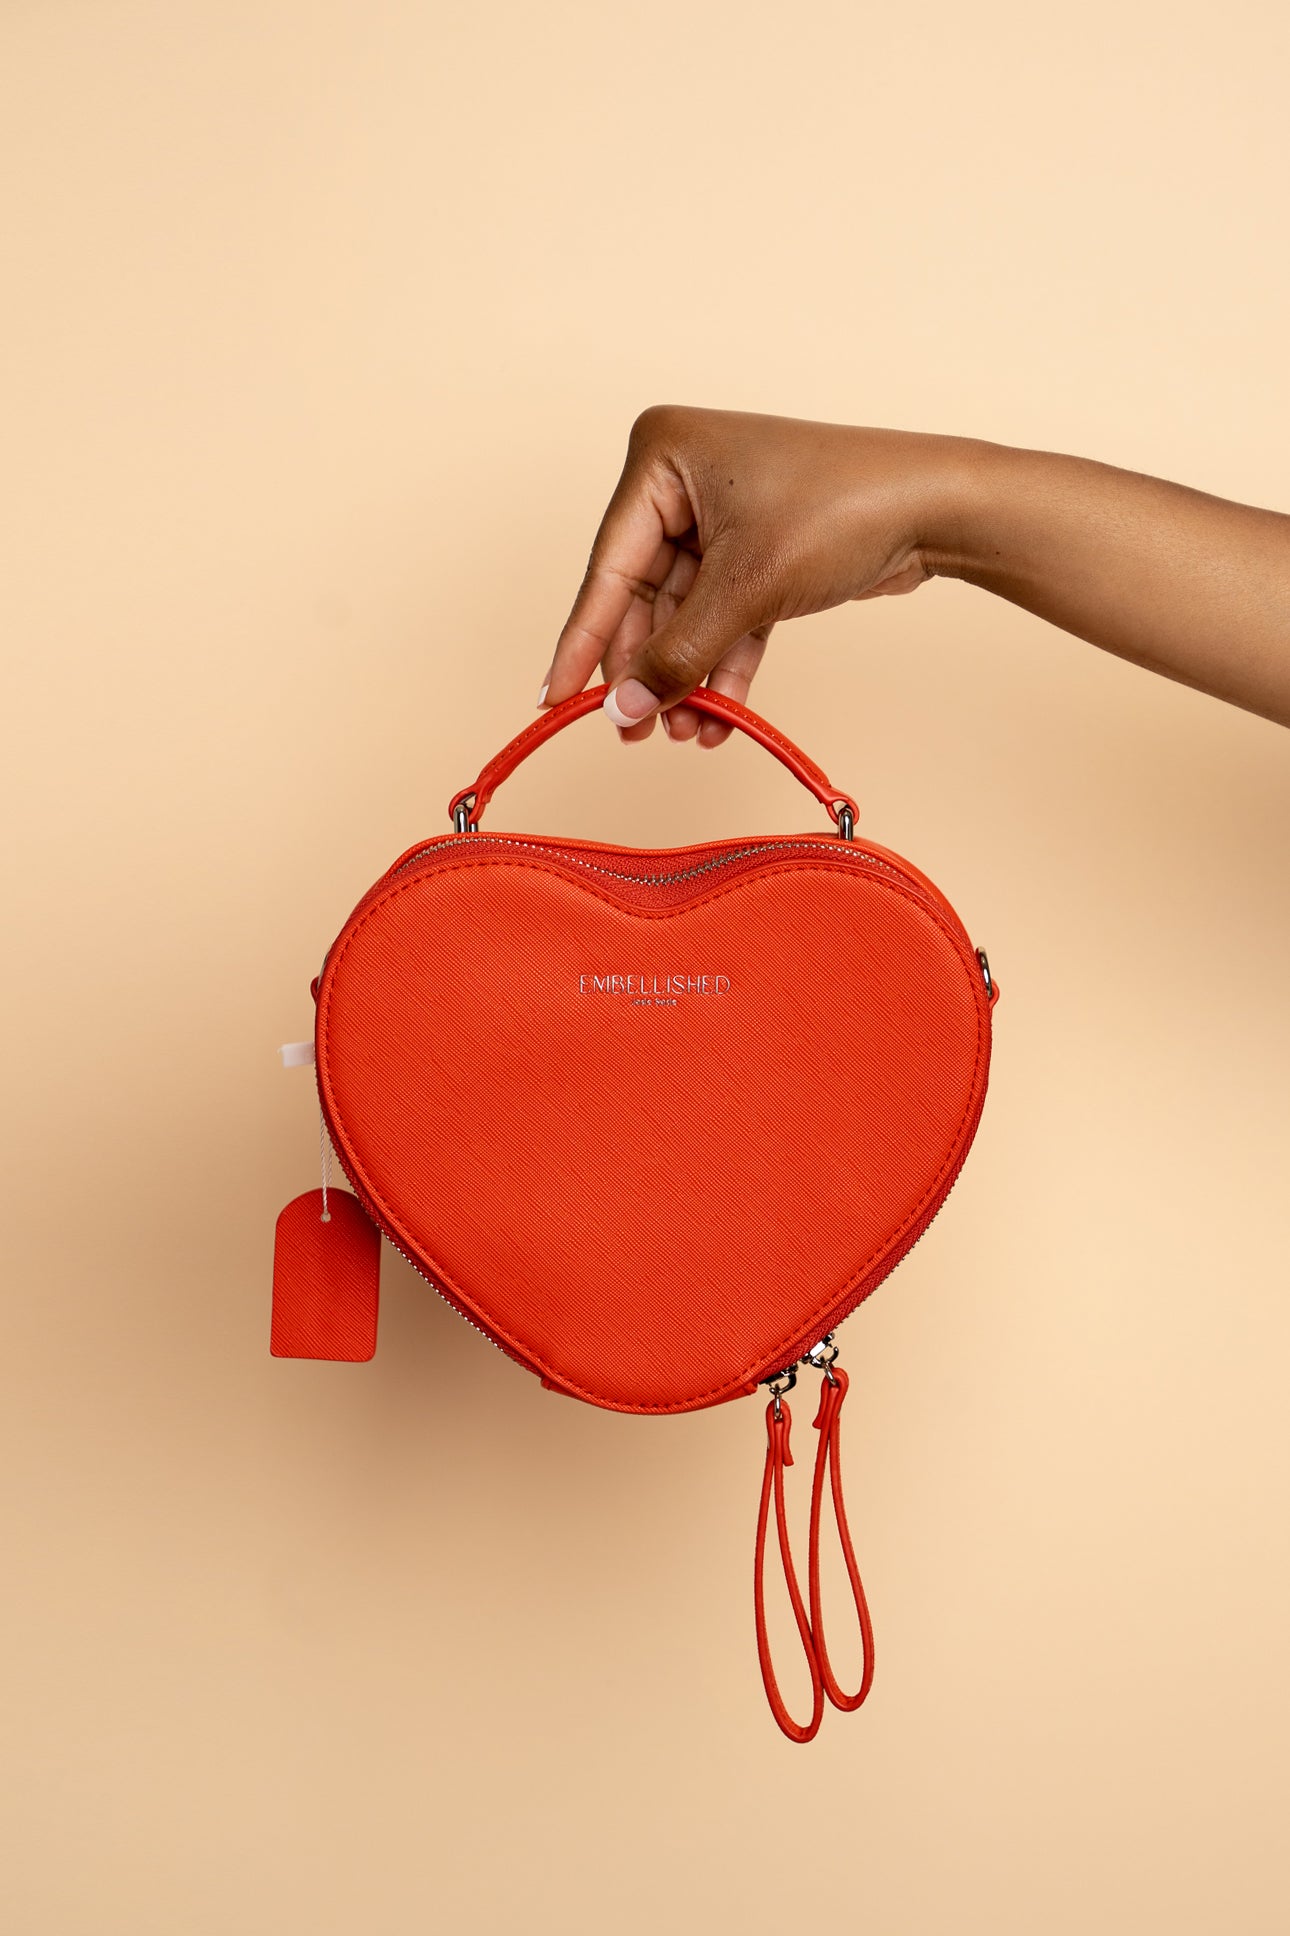 Love-Struck Bag | Pink Heart Purse